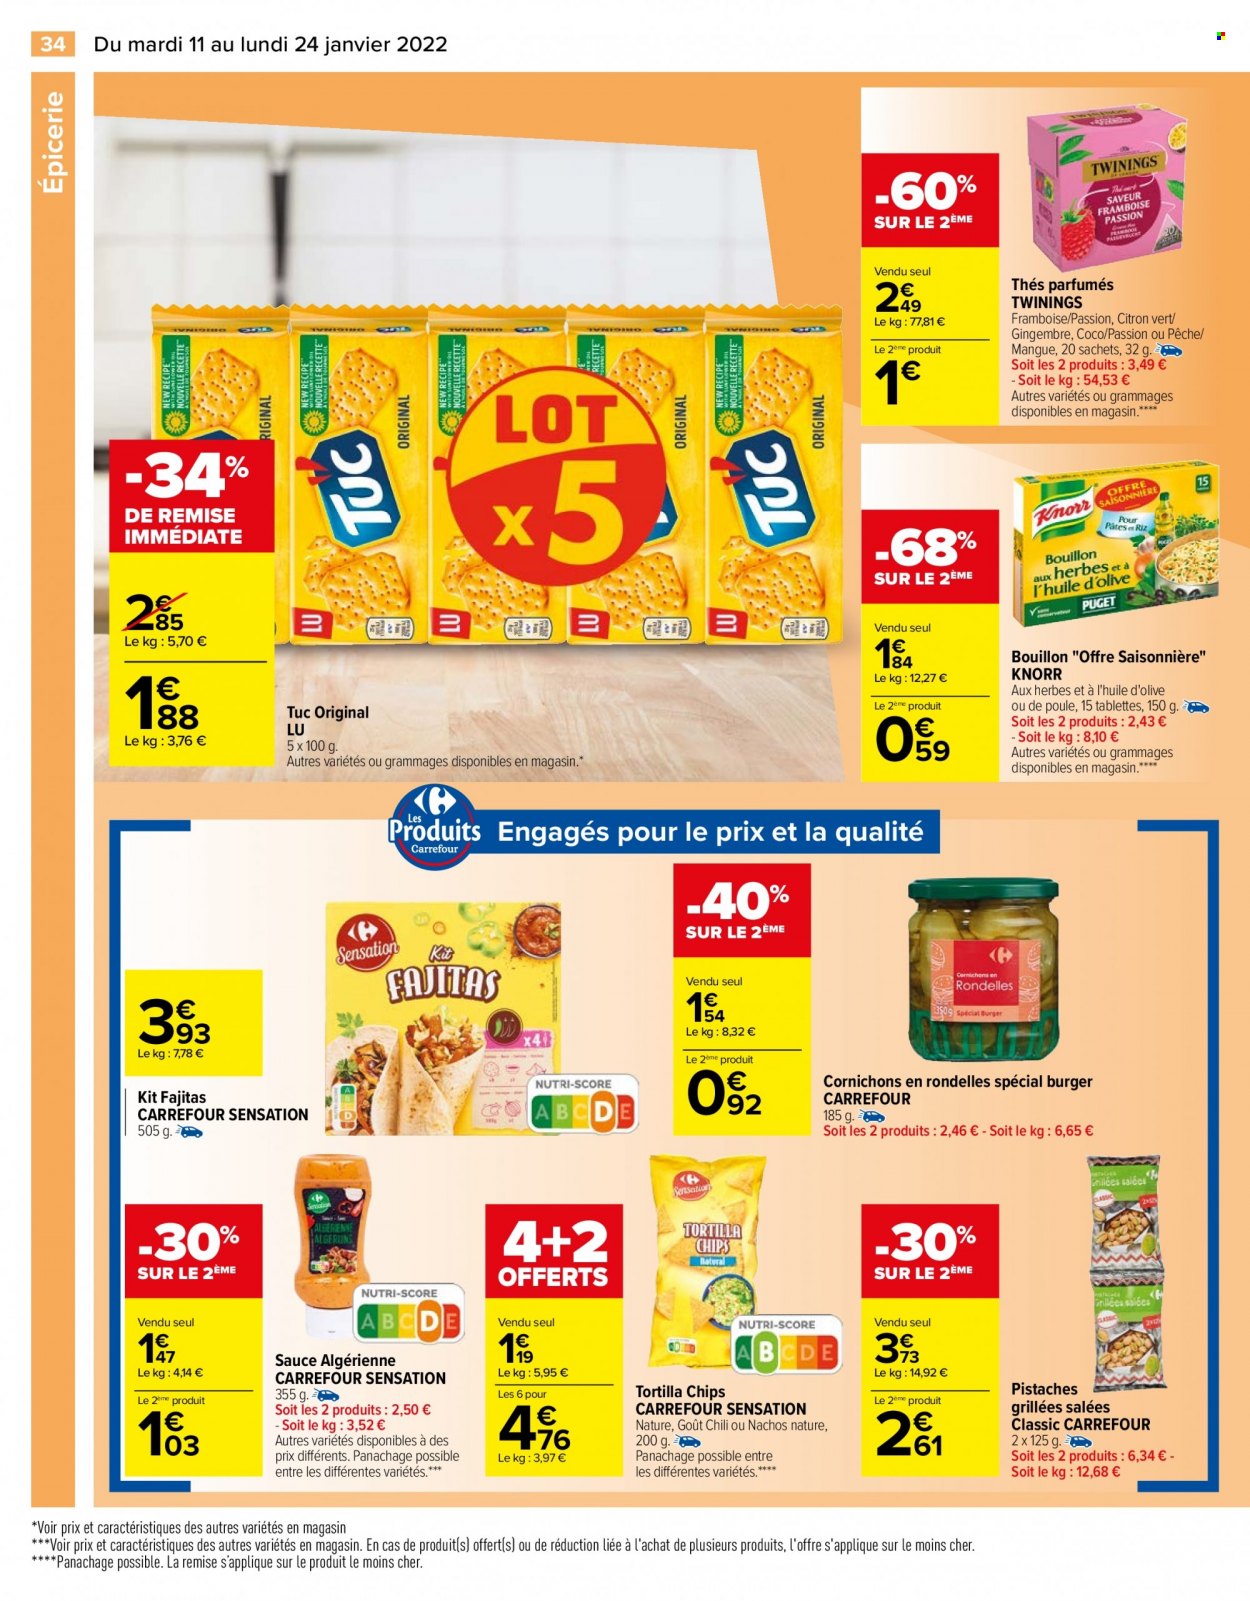 thumbnail - Catalogue Carrefour Hypermarchés - 11/01/2022 - 24/01/2022 - Produits soldés - mangue, gingembre, Knorr, fajitas, LU, chips, tortilla chips, TUC, bouillon, cornichons, huile d'olive, pistache. Page 34.